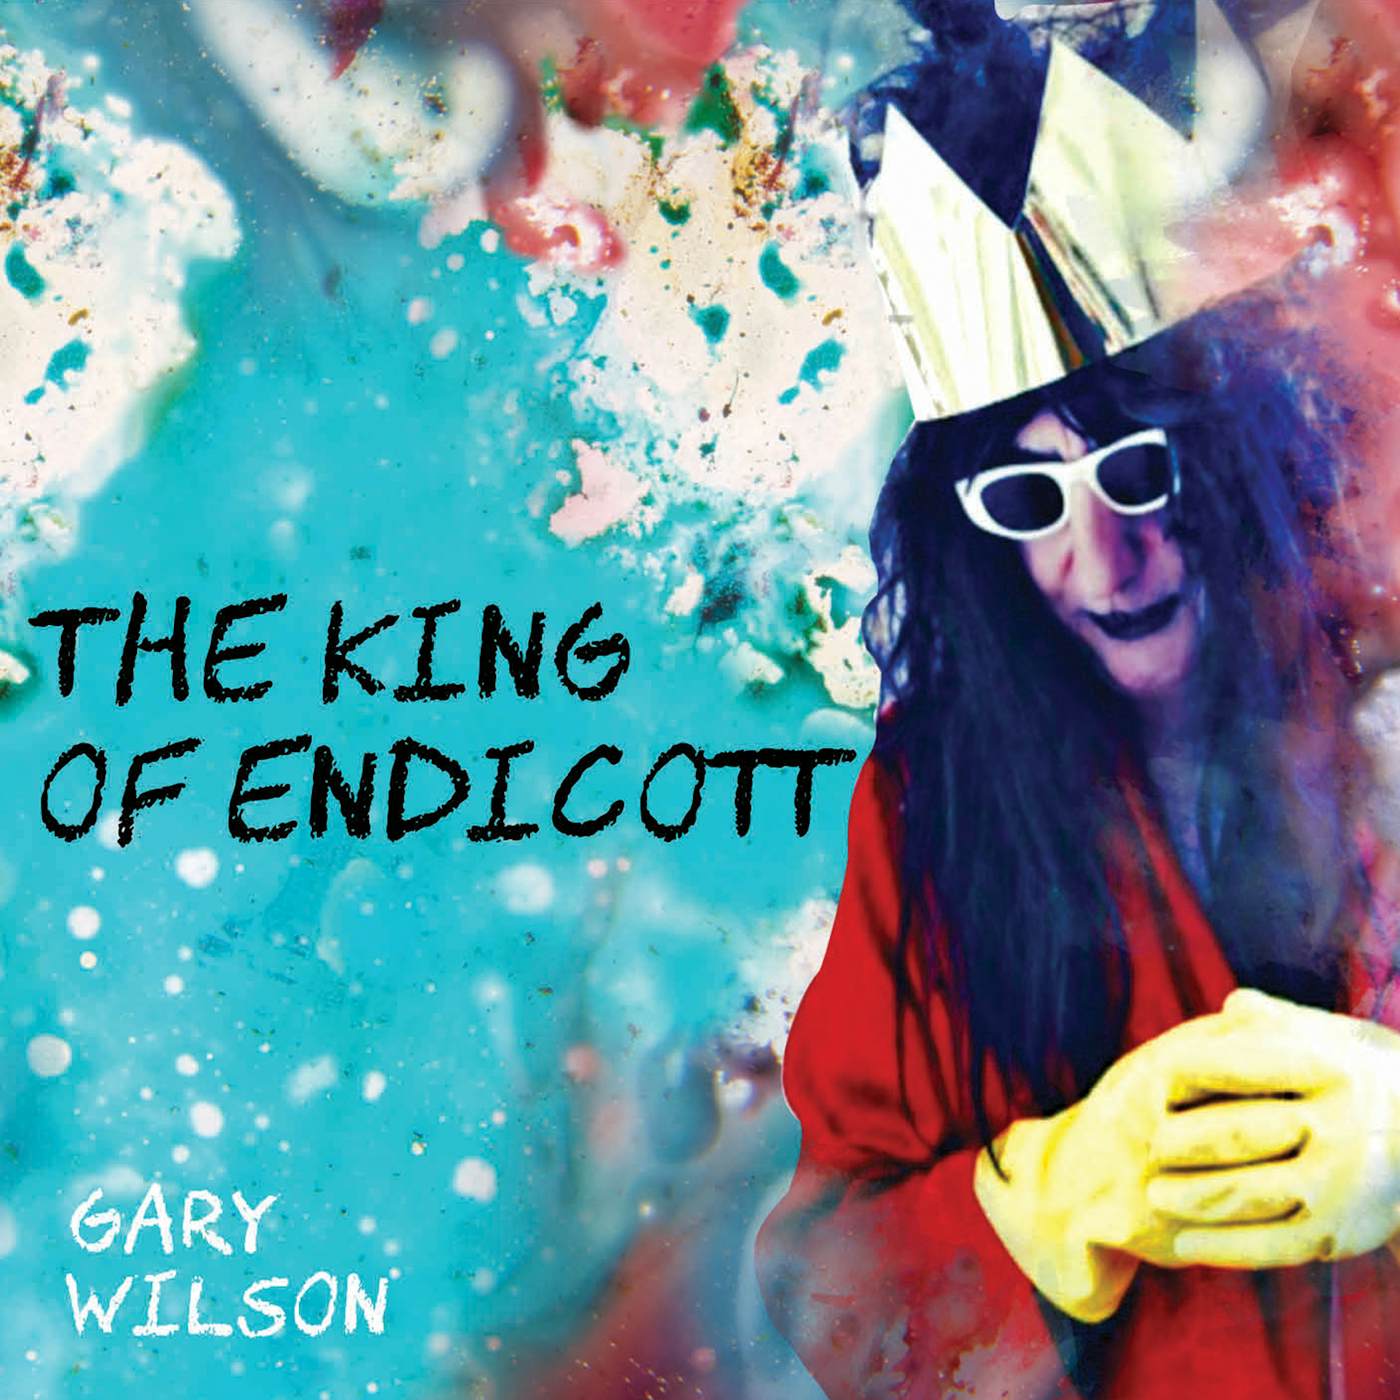 Gary Wilson THE KING OF ENDICOTT CD